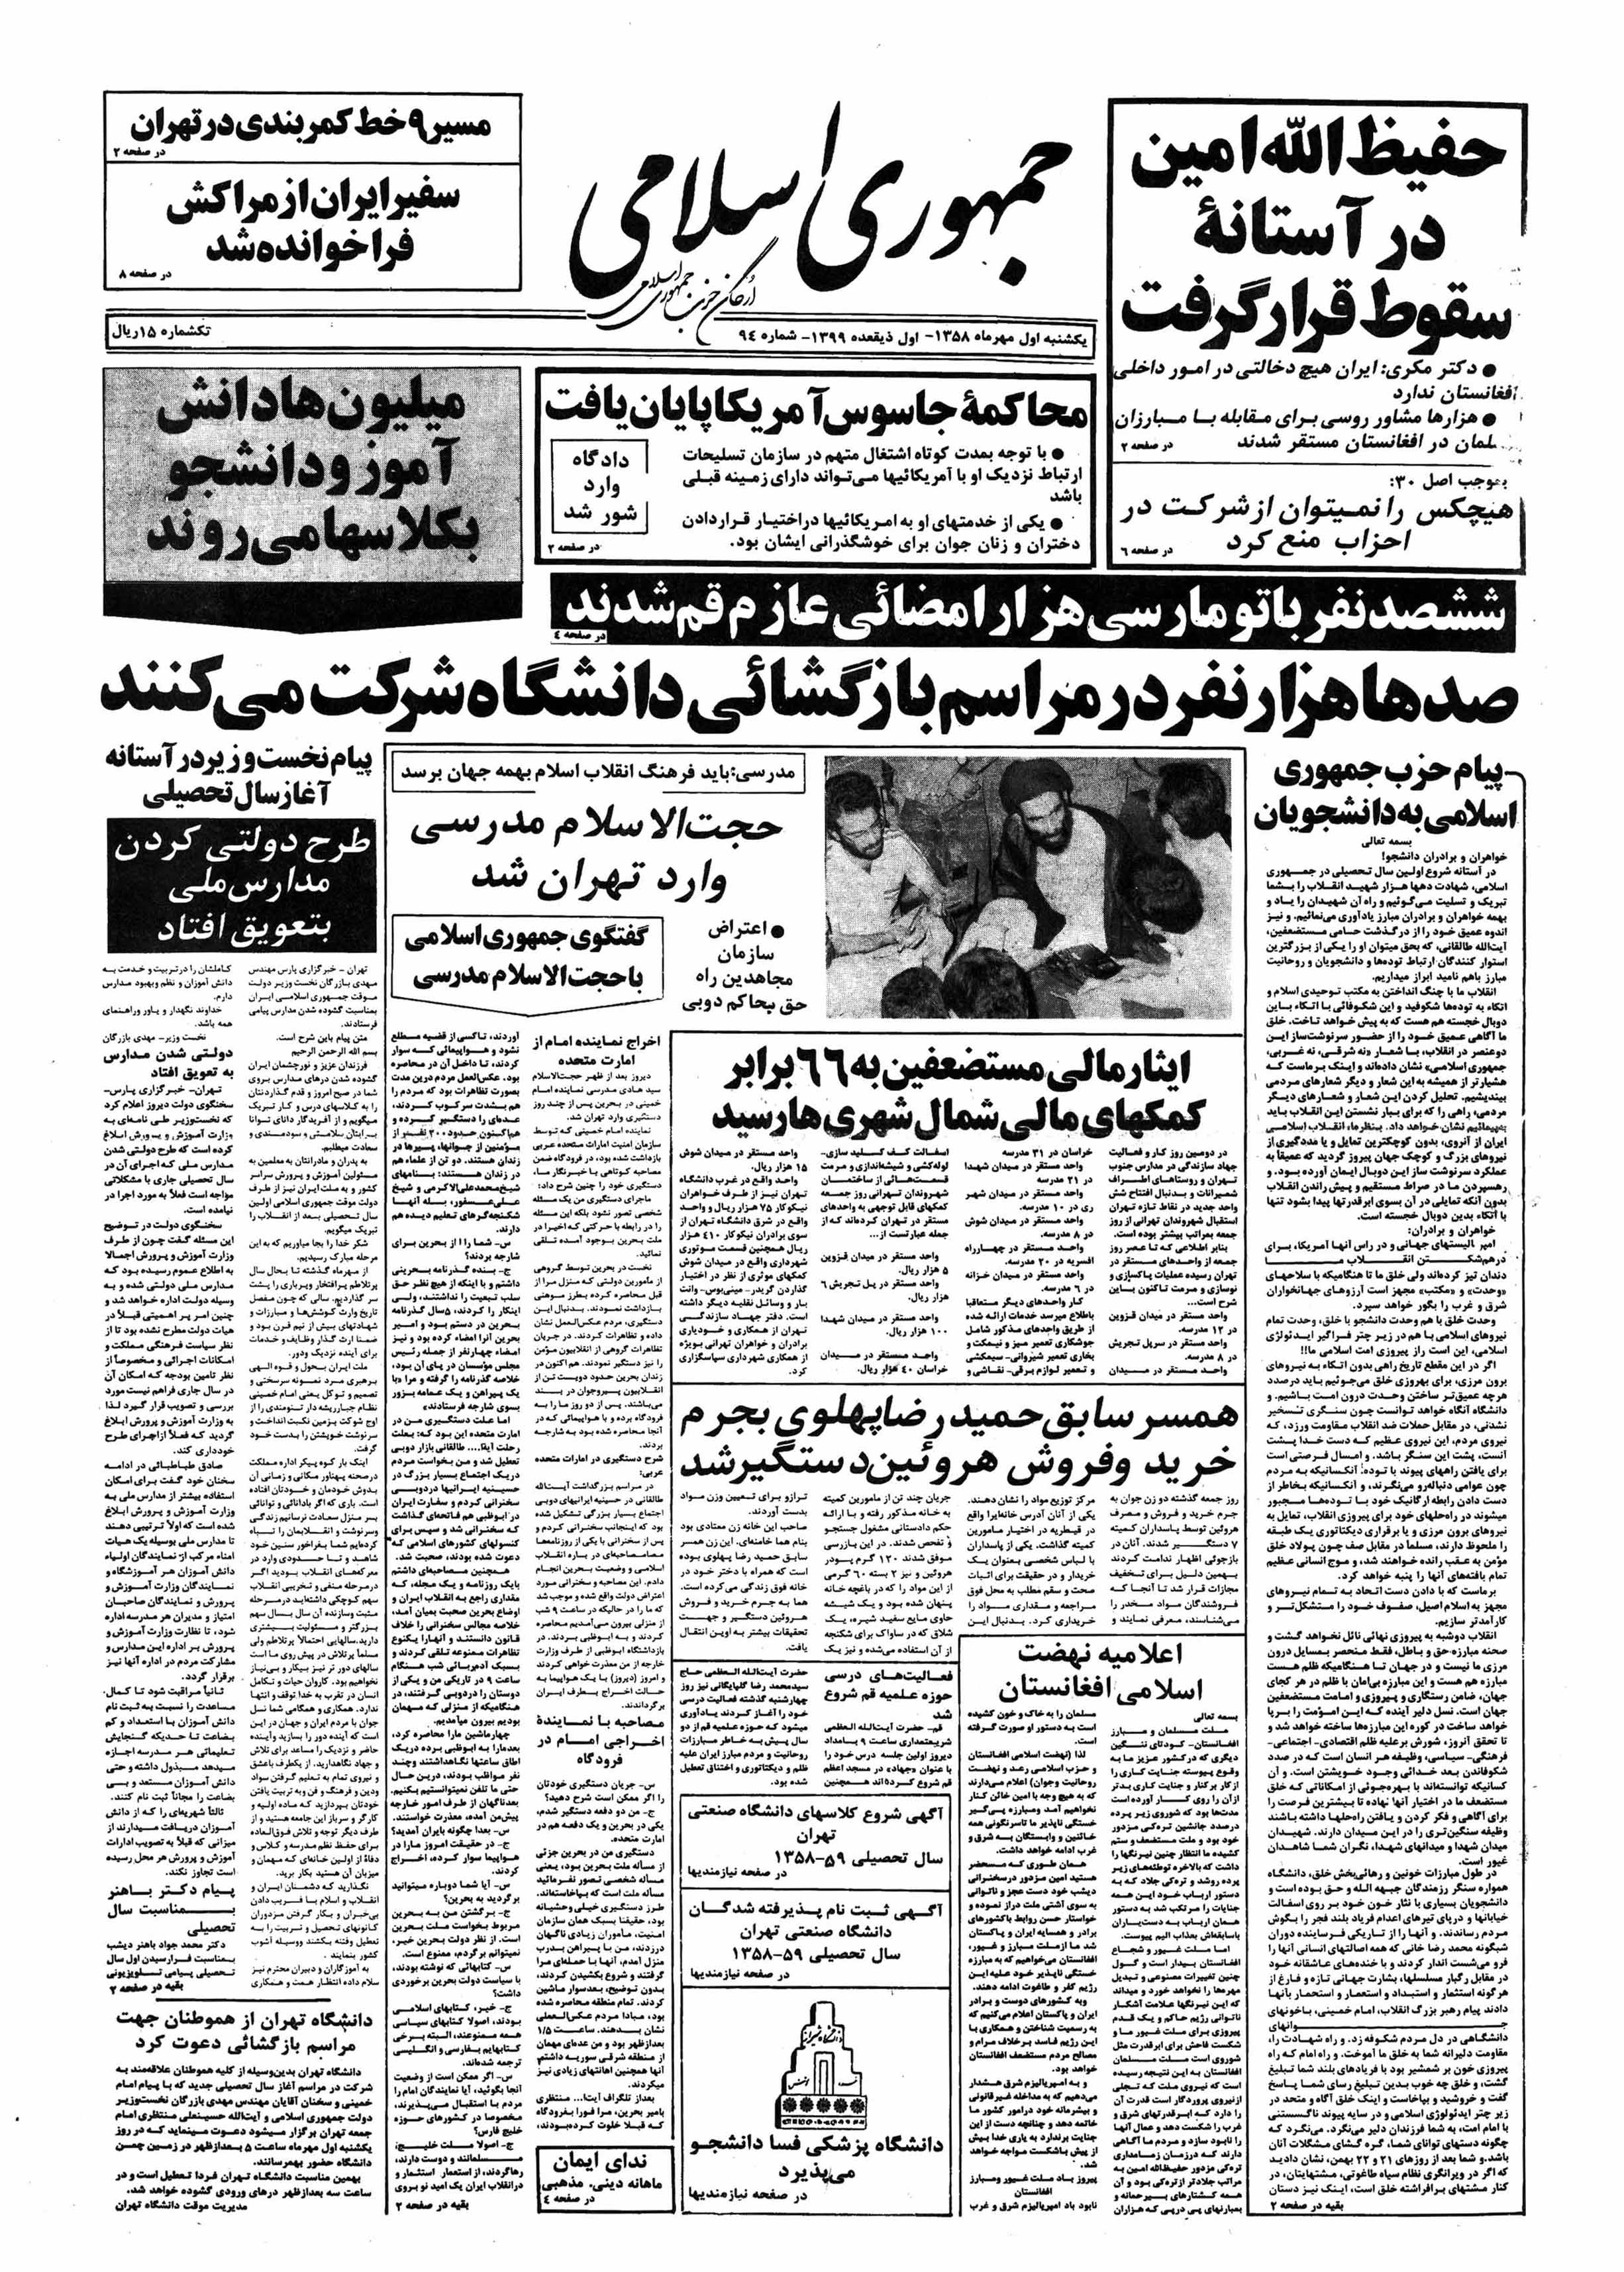 تصویر روزنامه جمهوری اسلامی ۱ مهر ۱۳۵۸